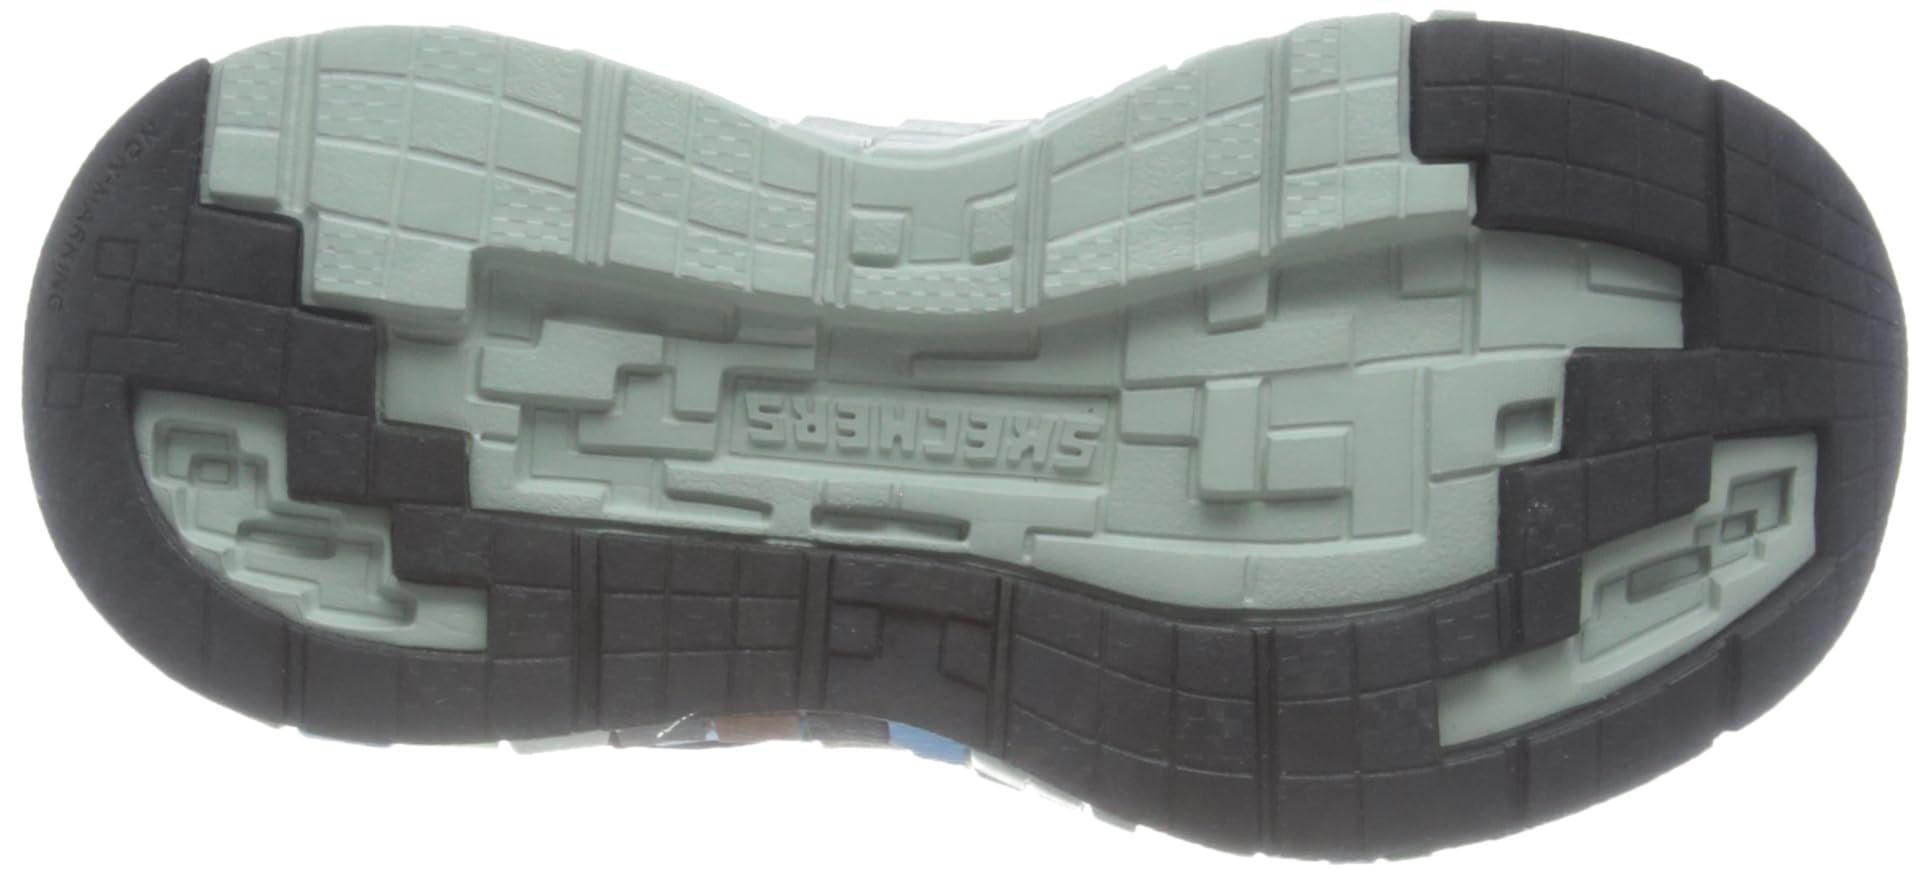 Skechers Unisex-Child Mega-Craft 3.0 Sneaker